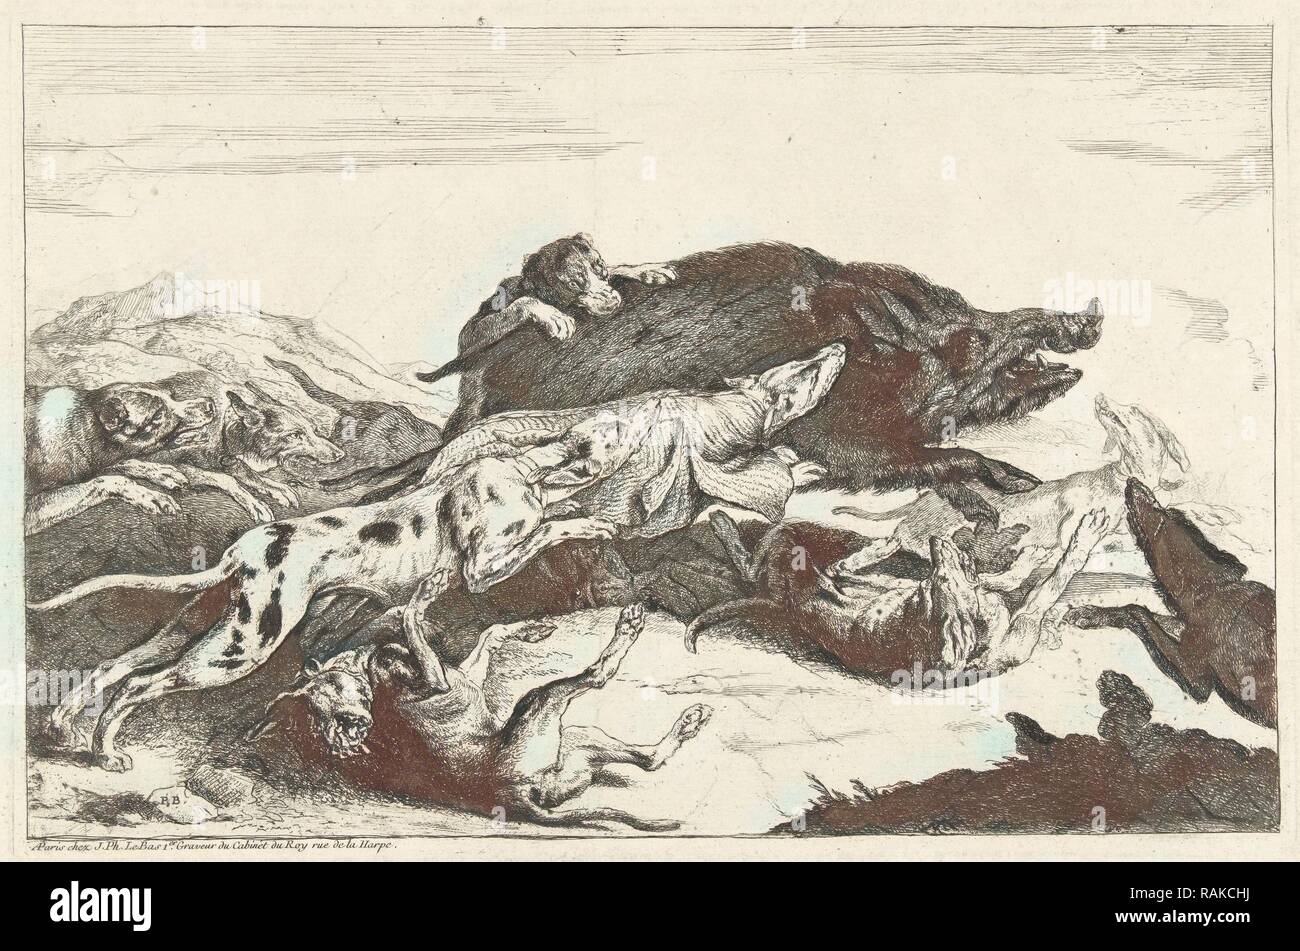 Les chiens chassent un sanglier, Peeter Boel, ch. 1650 - c. 1674. Repensé par Gibon. L'art classique avec une touche moderne repensé Banque D'Images